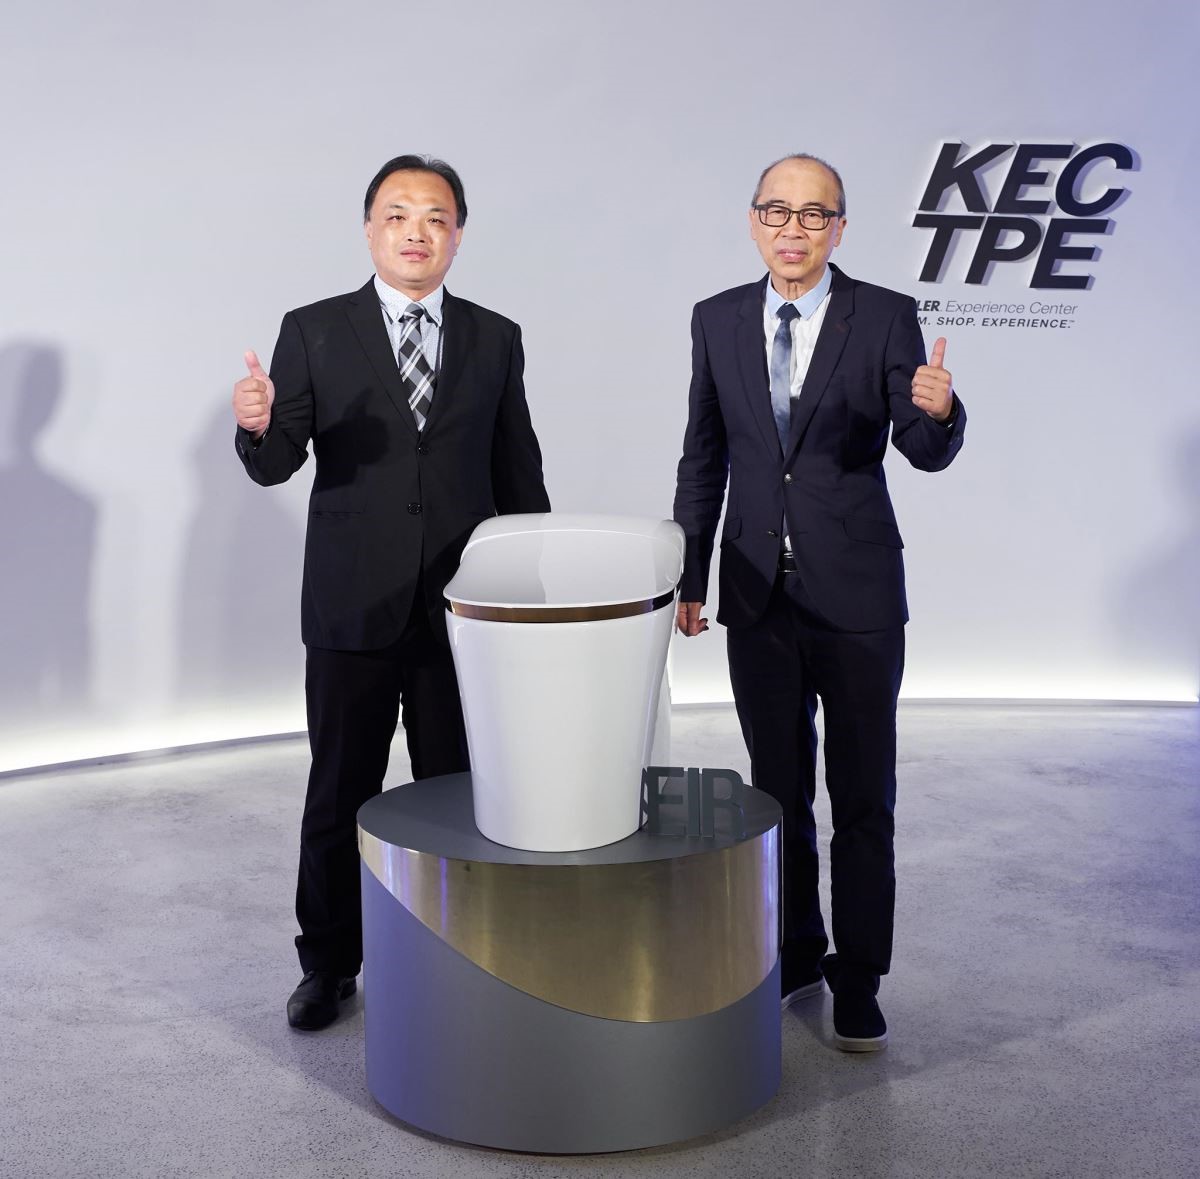 KOHLER 廚衛集團東北亞業務總監譚寶強先生（右）與 KOHLER Taiwan 副總監李順生先生，共同為全新智能馬桶 EIR 揭幕。